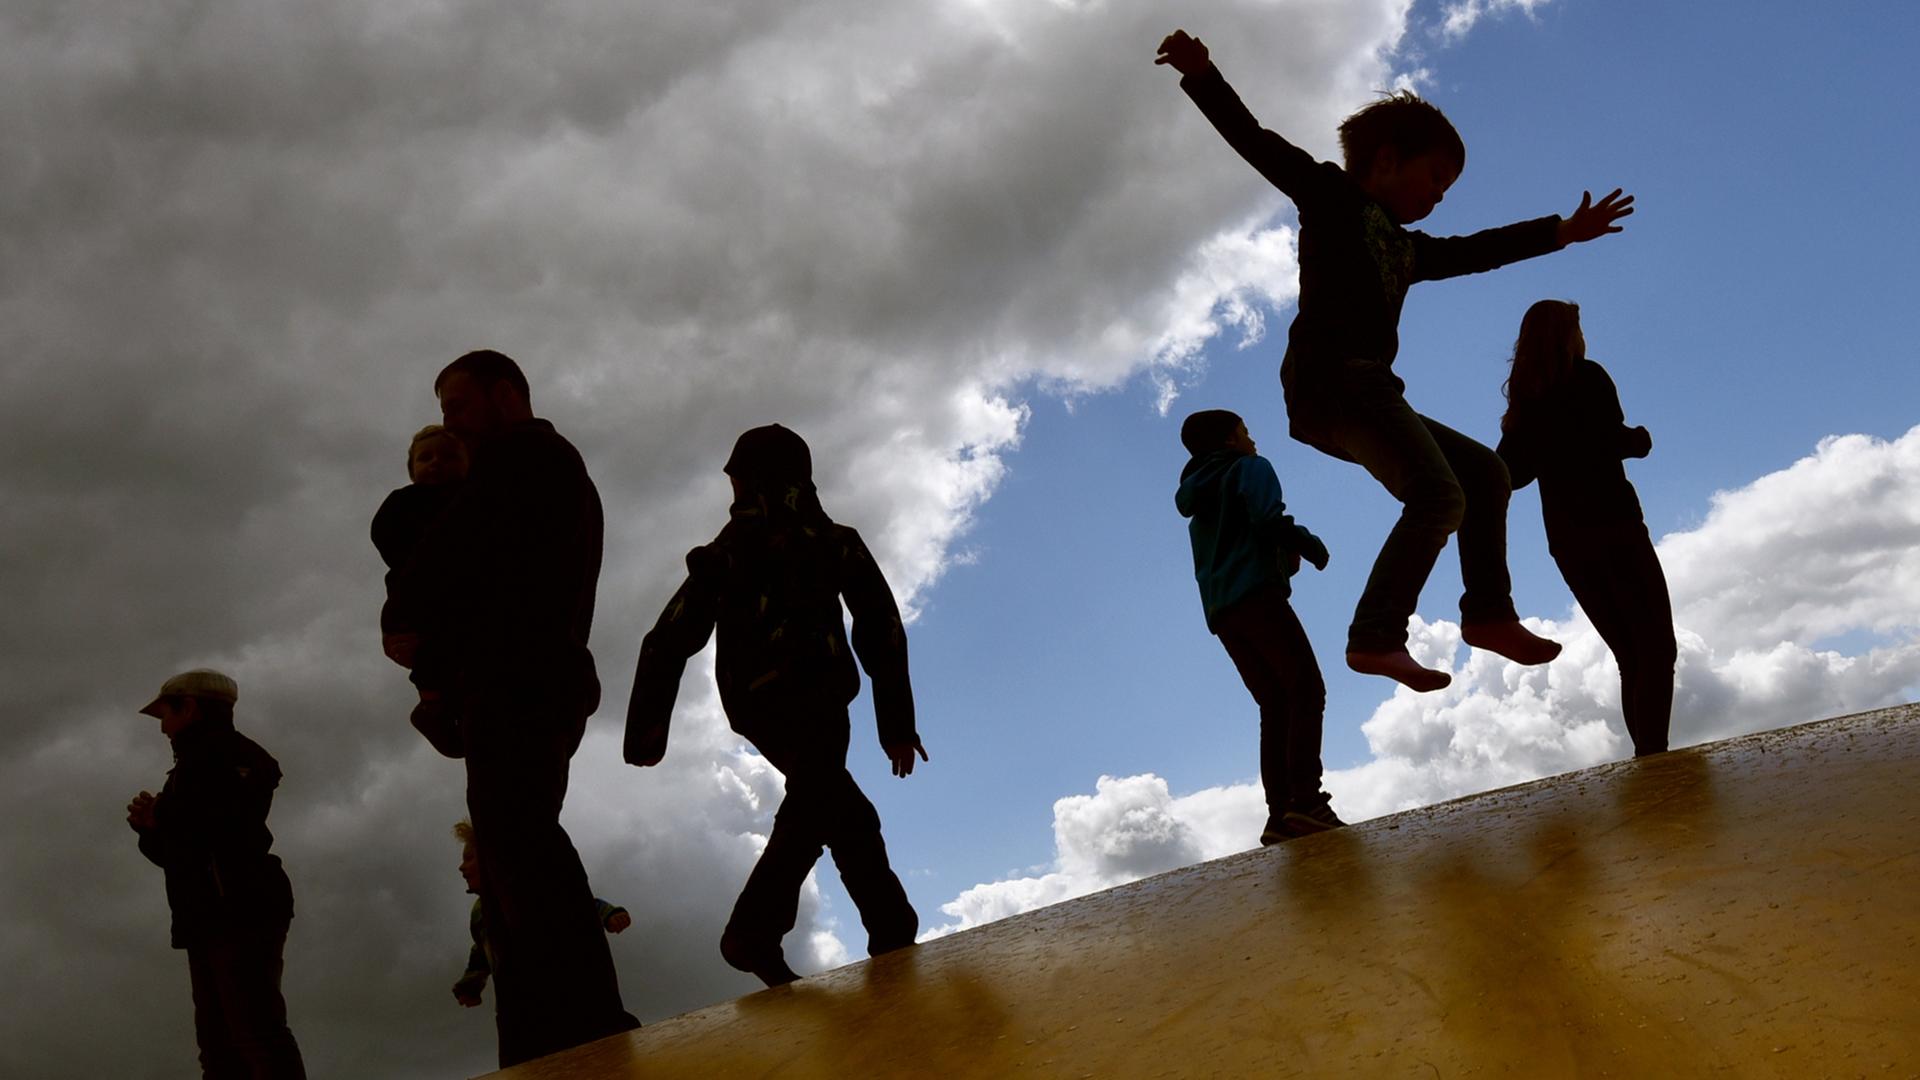 Kinder springen am 17.05.2015 bei wechselhaftem Wetter auf einer Hüpfburg in Elstal (Brandenburg) und heben sich dabei als Schatten vom Himmel ab.